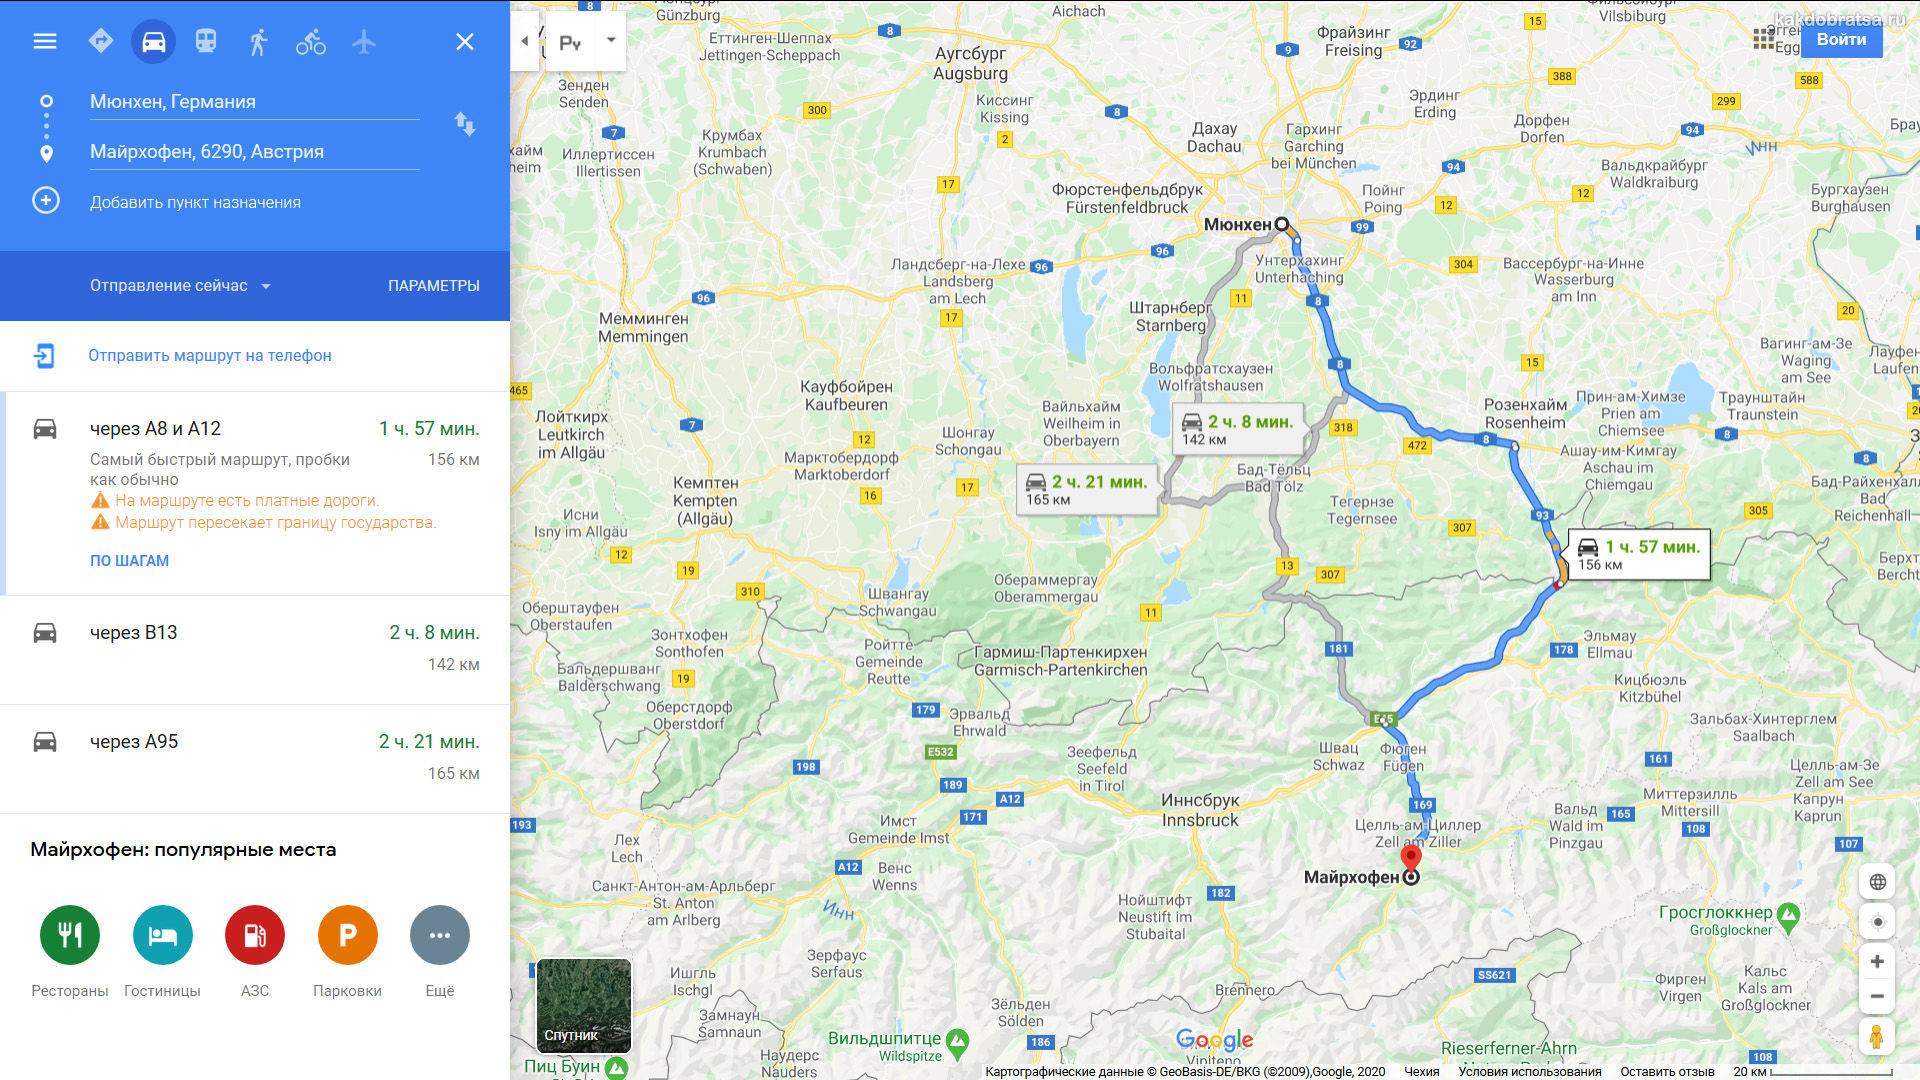 Из зальцбурга в мюнхен на поезде или автобусе: расстояние, расписание и билеты, как самостоятельно доехать на машине